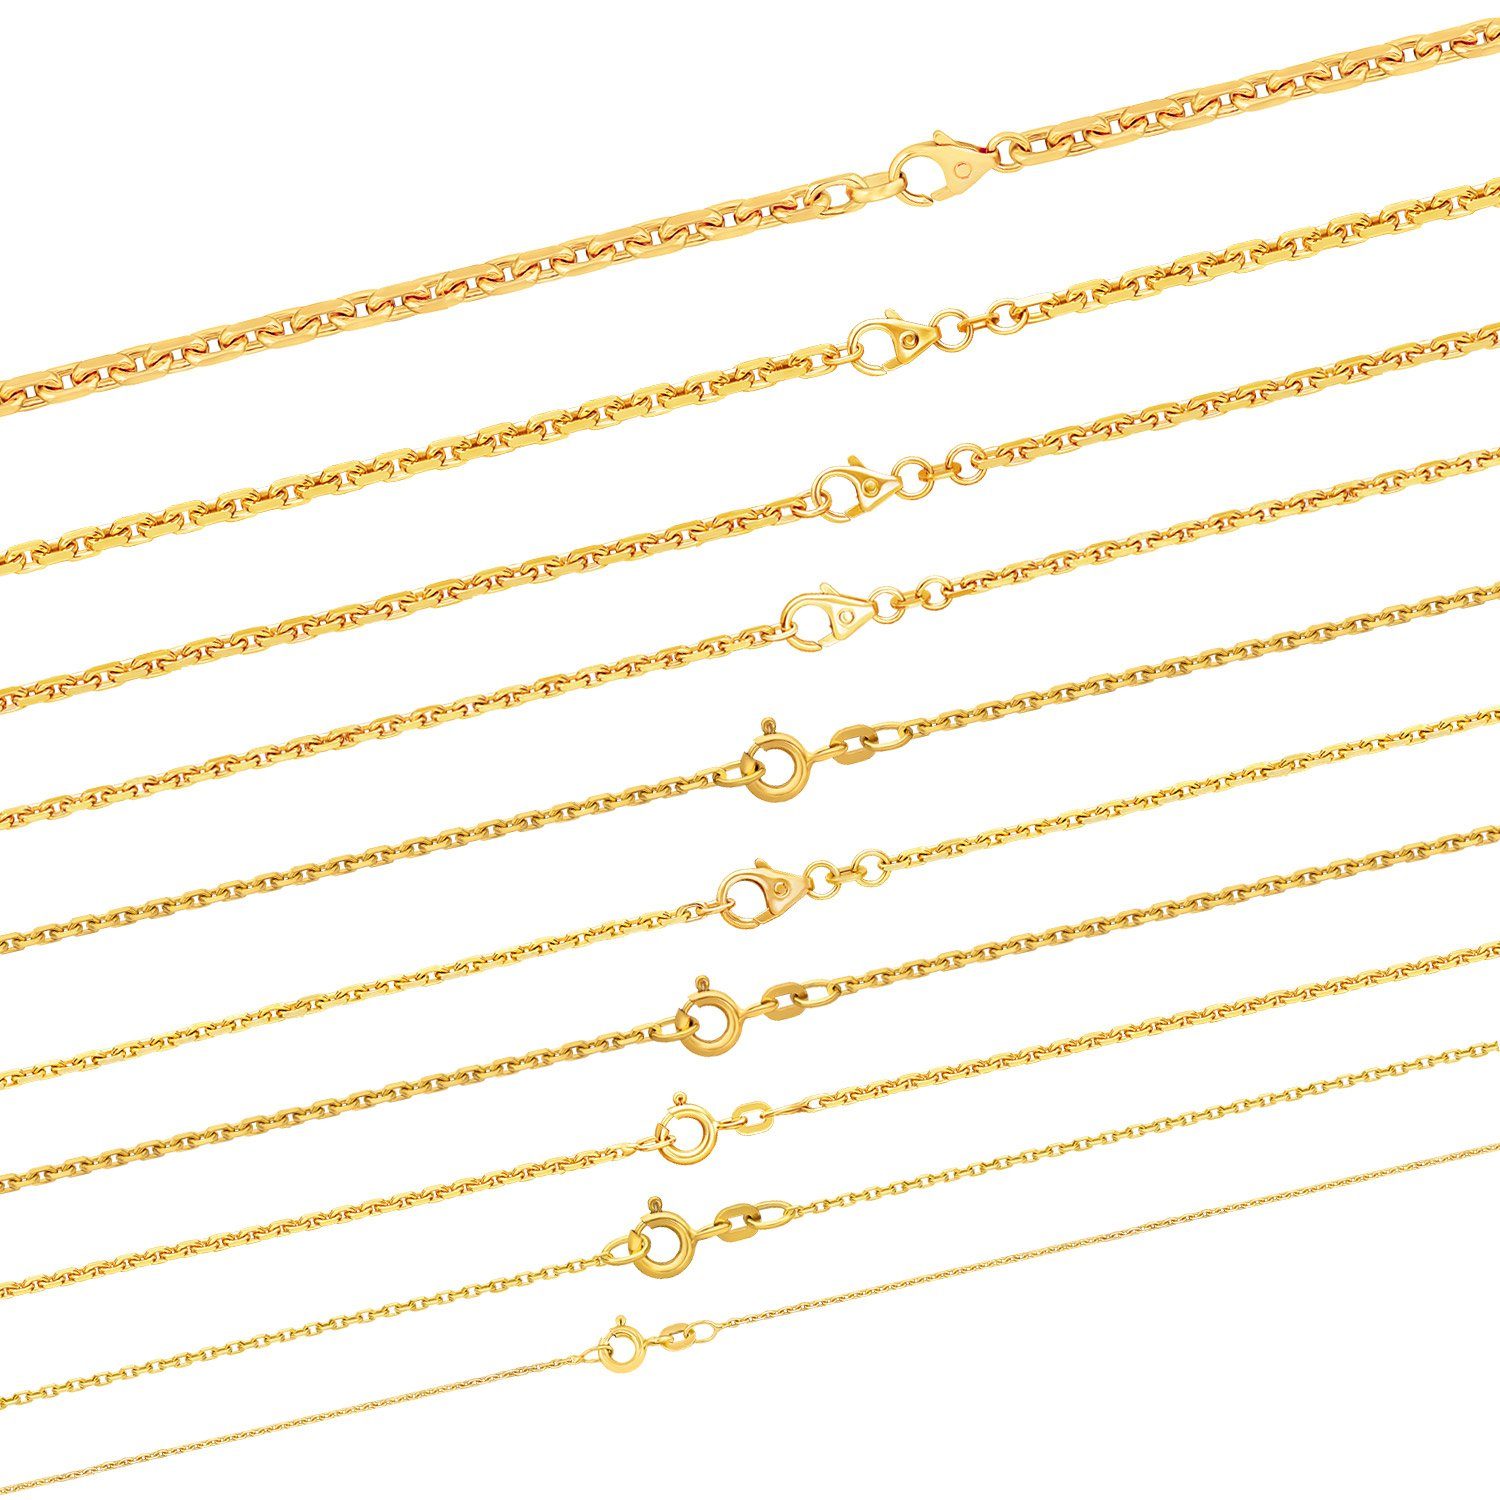 HOPLO Goldkette Ankerkette diamantiert Länge 45cm - Breite 3mm - 750-18 Karat Gold, Made in Germany